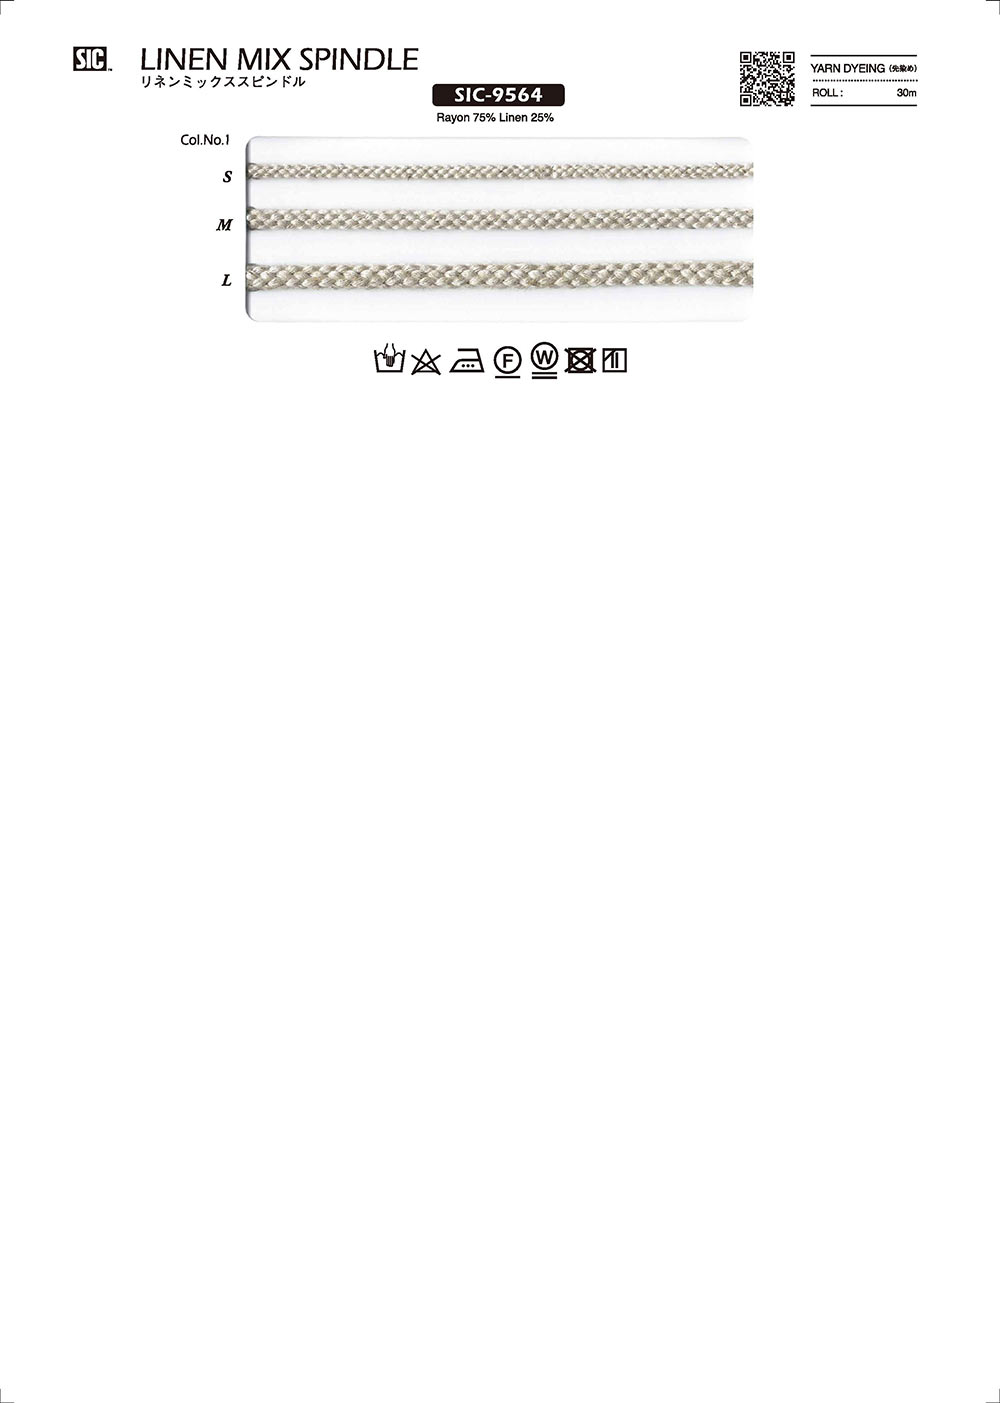 SIC-9564 リネンミックススピンドル[リボン・テープ・コード] SHINDO(SIC)